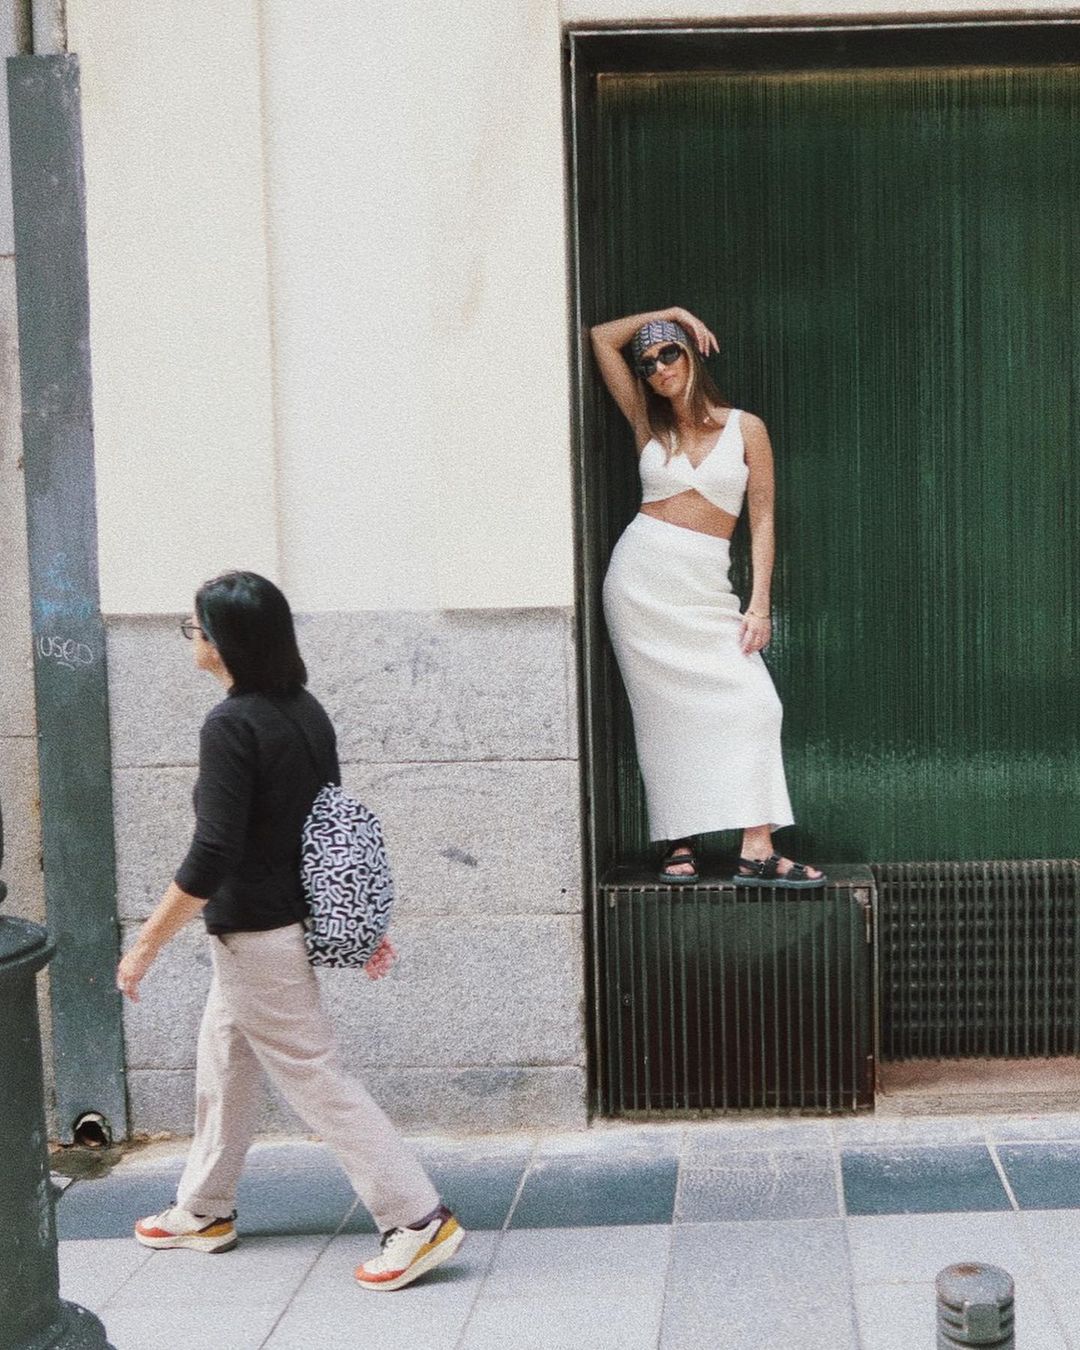 Julia Wieniawa pozuje na ulicach Madrytu
Instagram/juliawieniawa